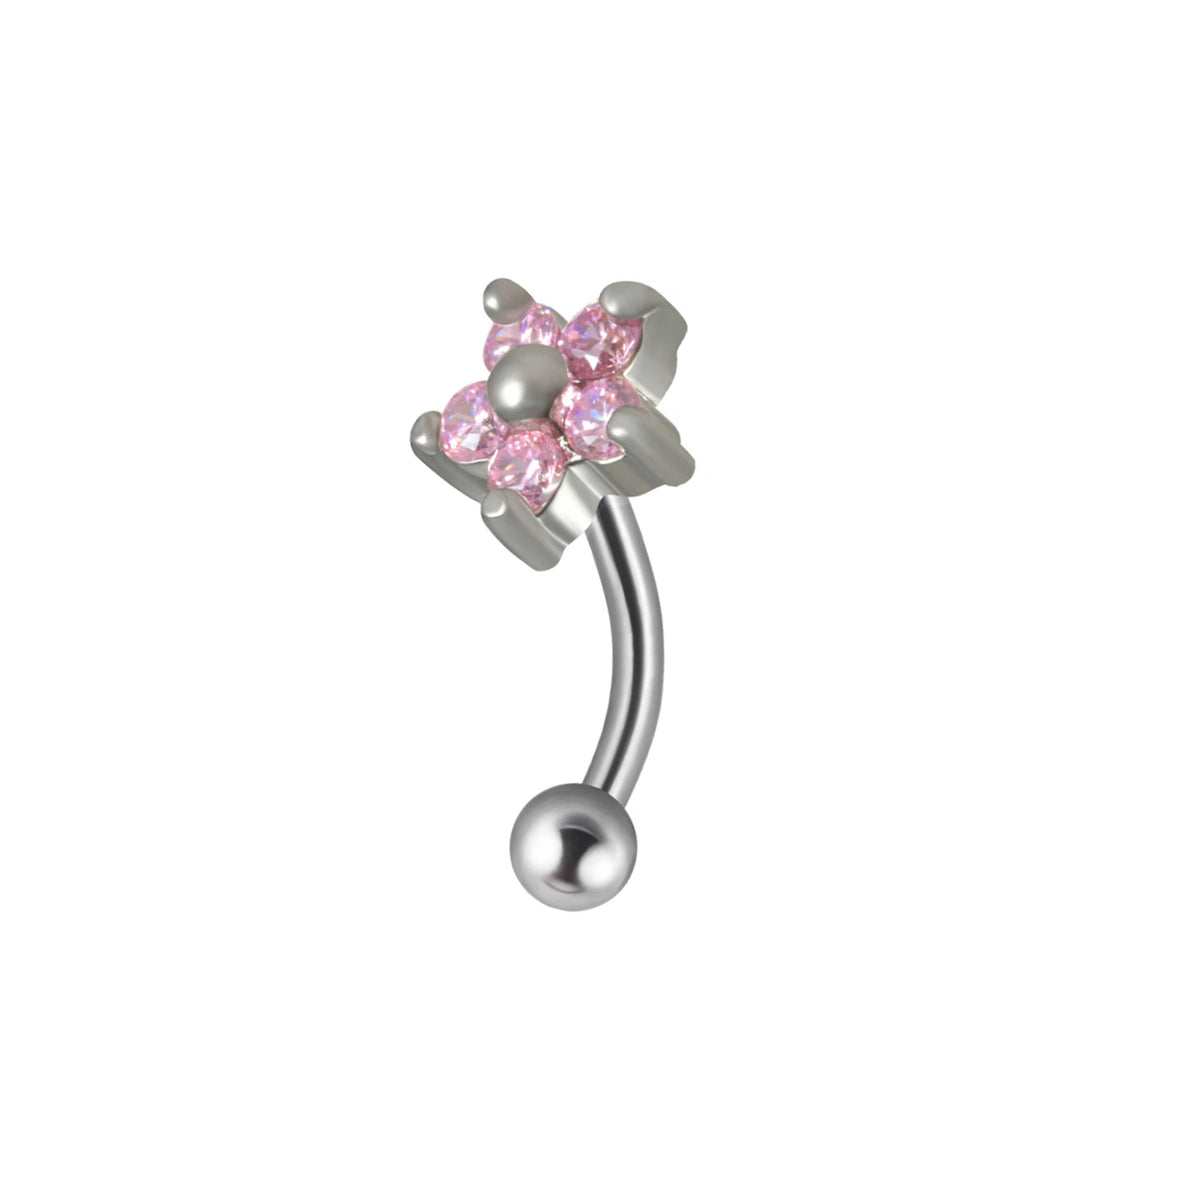 Joli piercing Jestrum avec barre incurvée en titane avec diamant arc-en-ciel rose clair